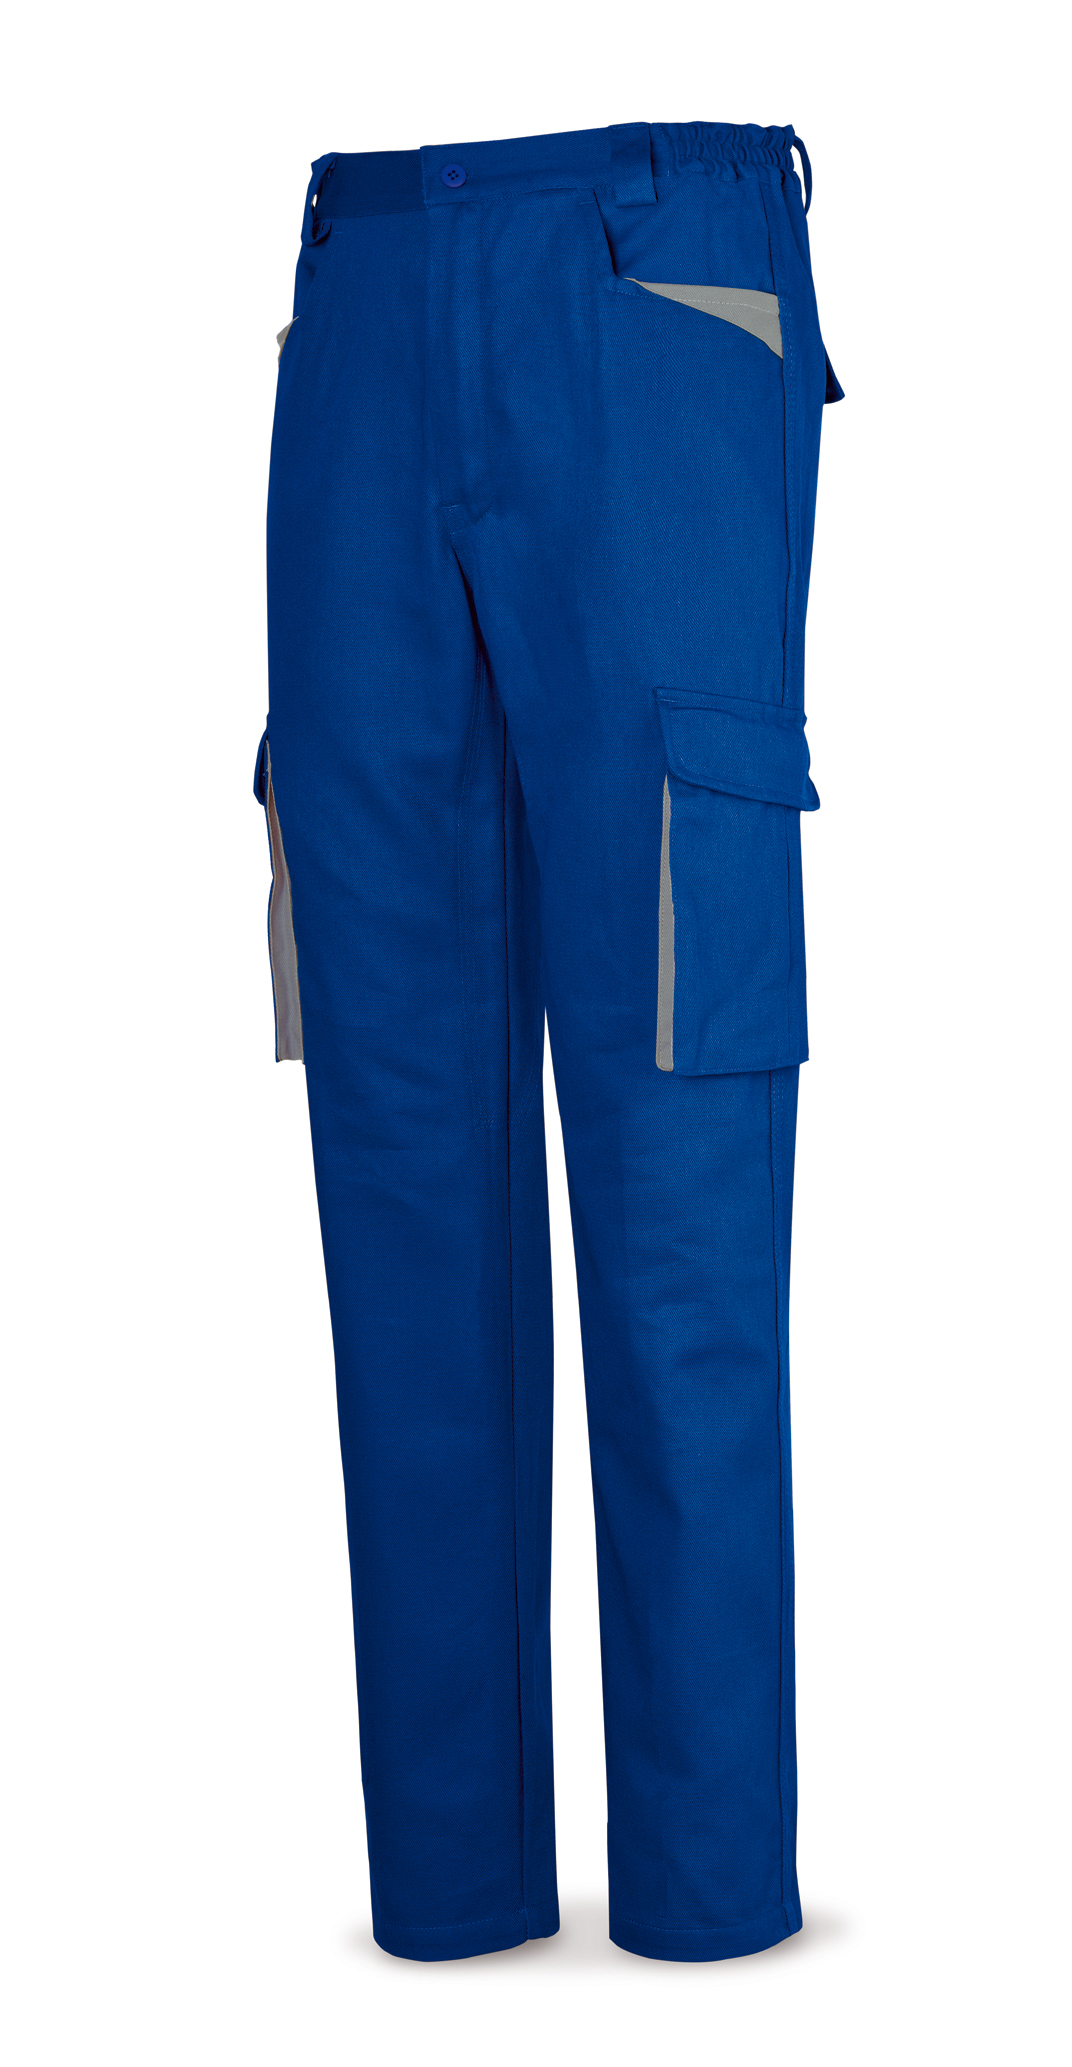 488-P SupTop Vestuario Laboral Serie SuperTop Pantalón azulina en Algodón de 270 g. Multibolsillos